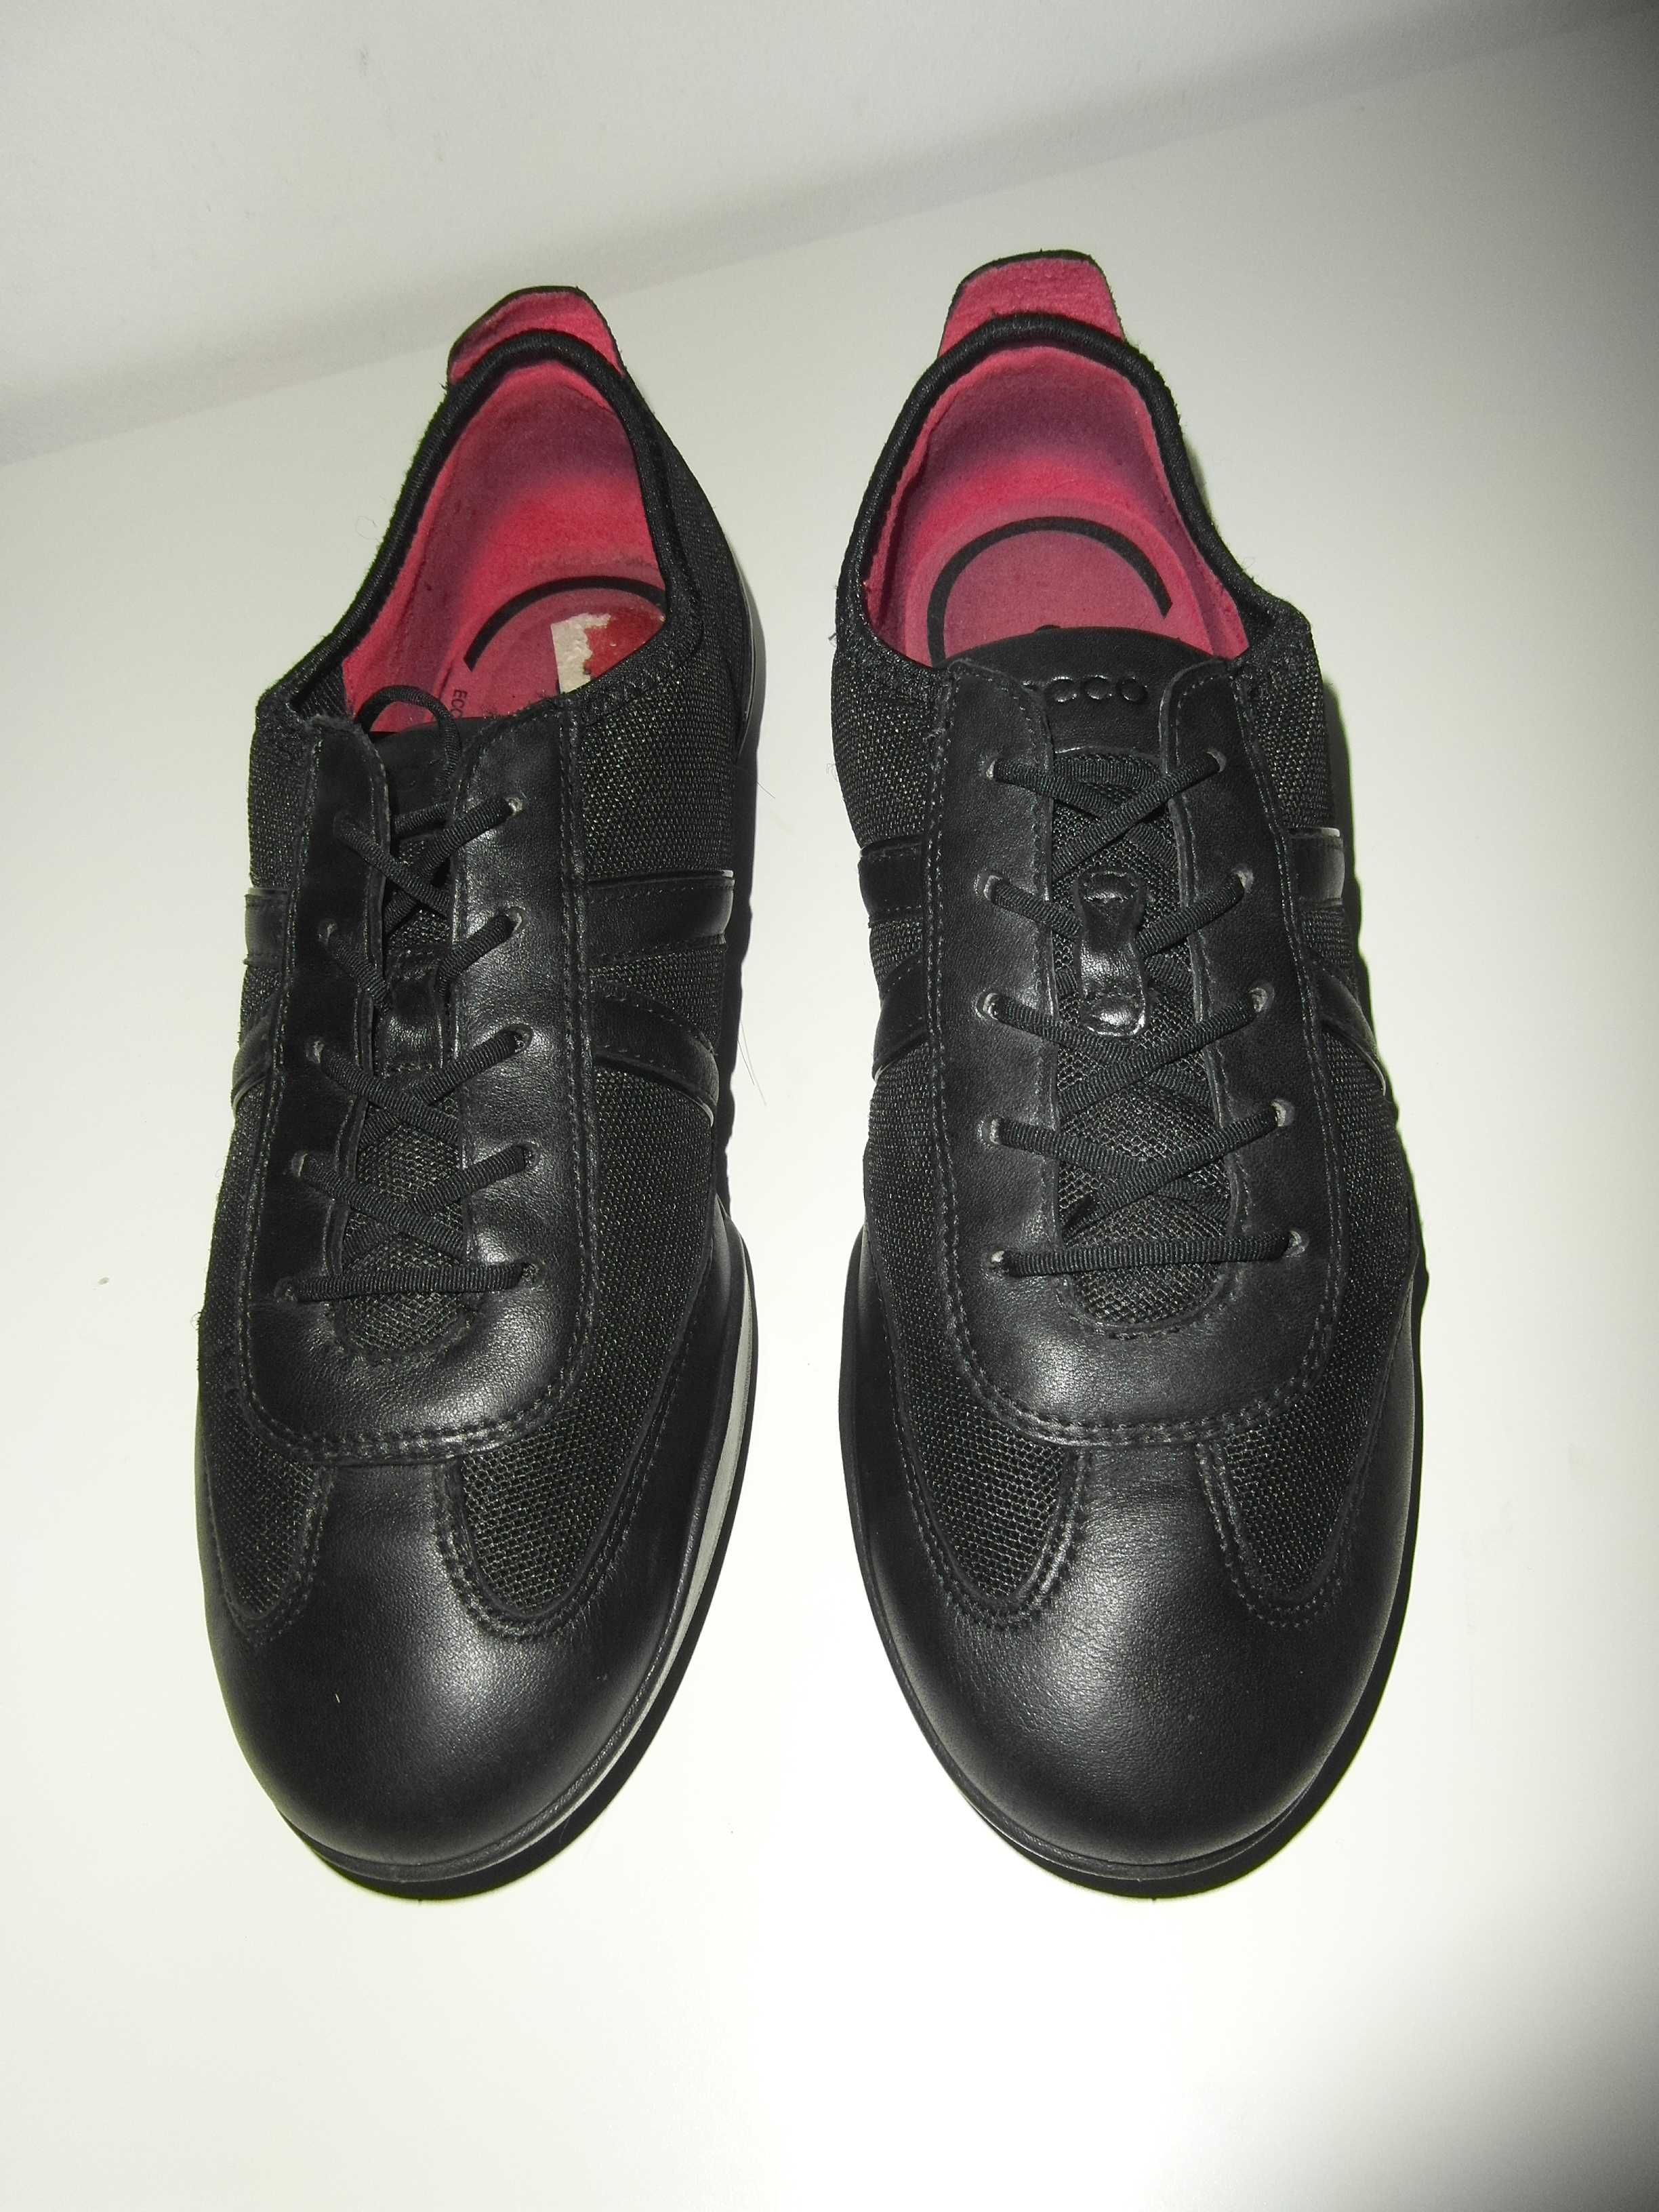 Ecco Stylowe damskie buty ze skóry 39 wkł. 25 cm